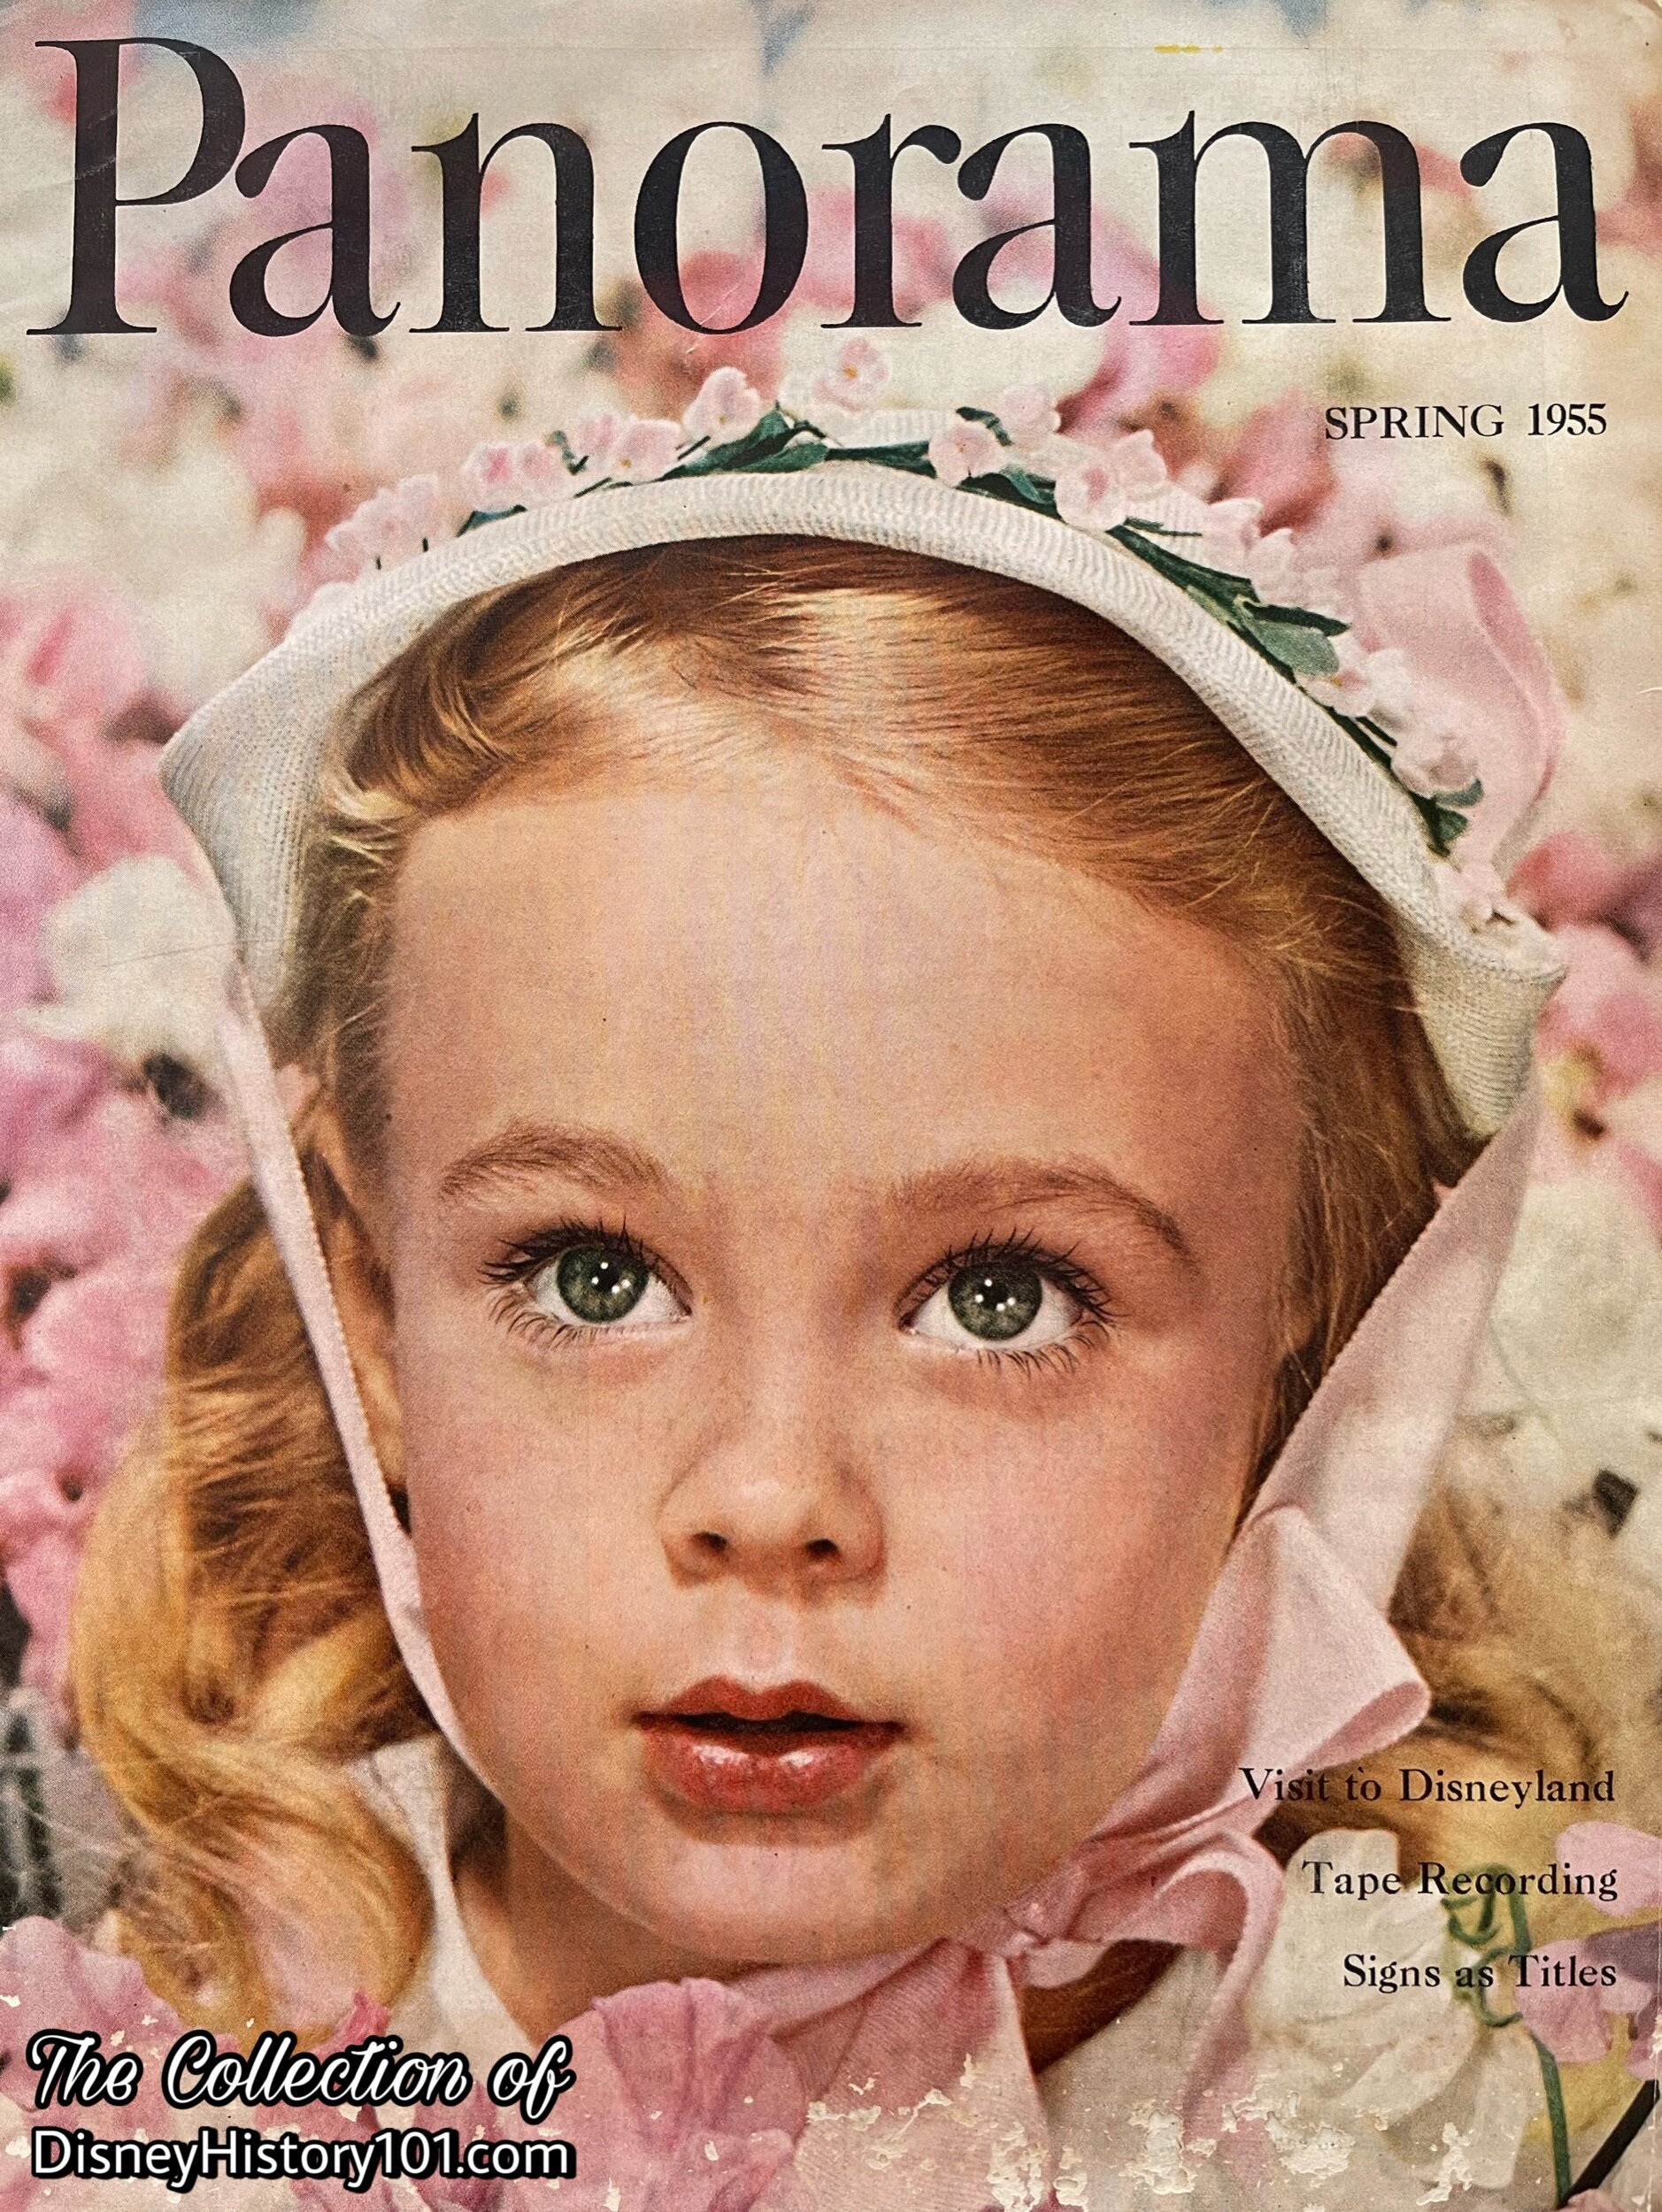 Panorama Magazine, Spring 1955.